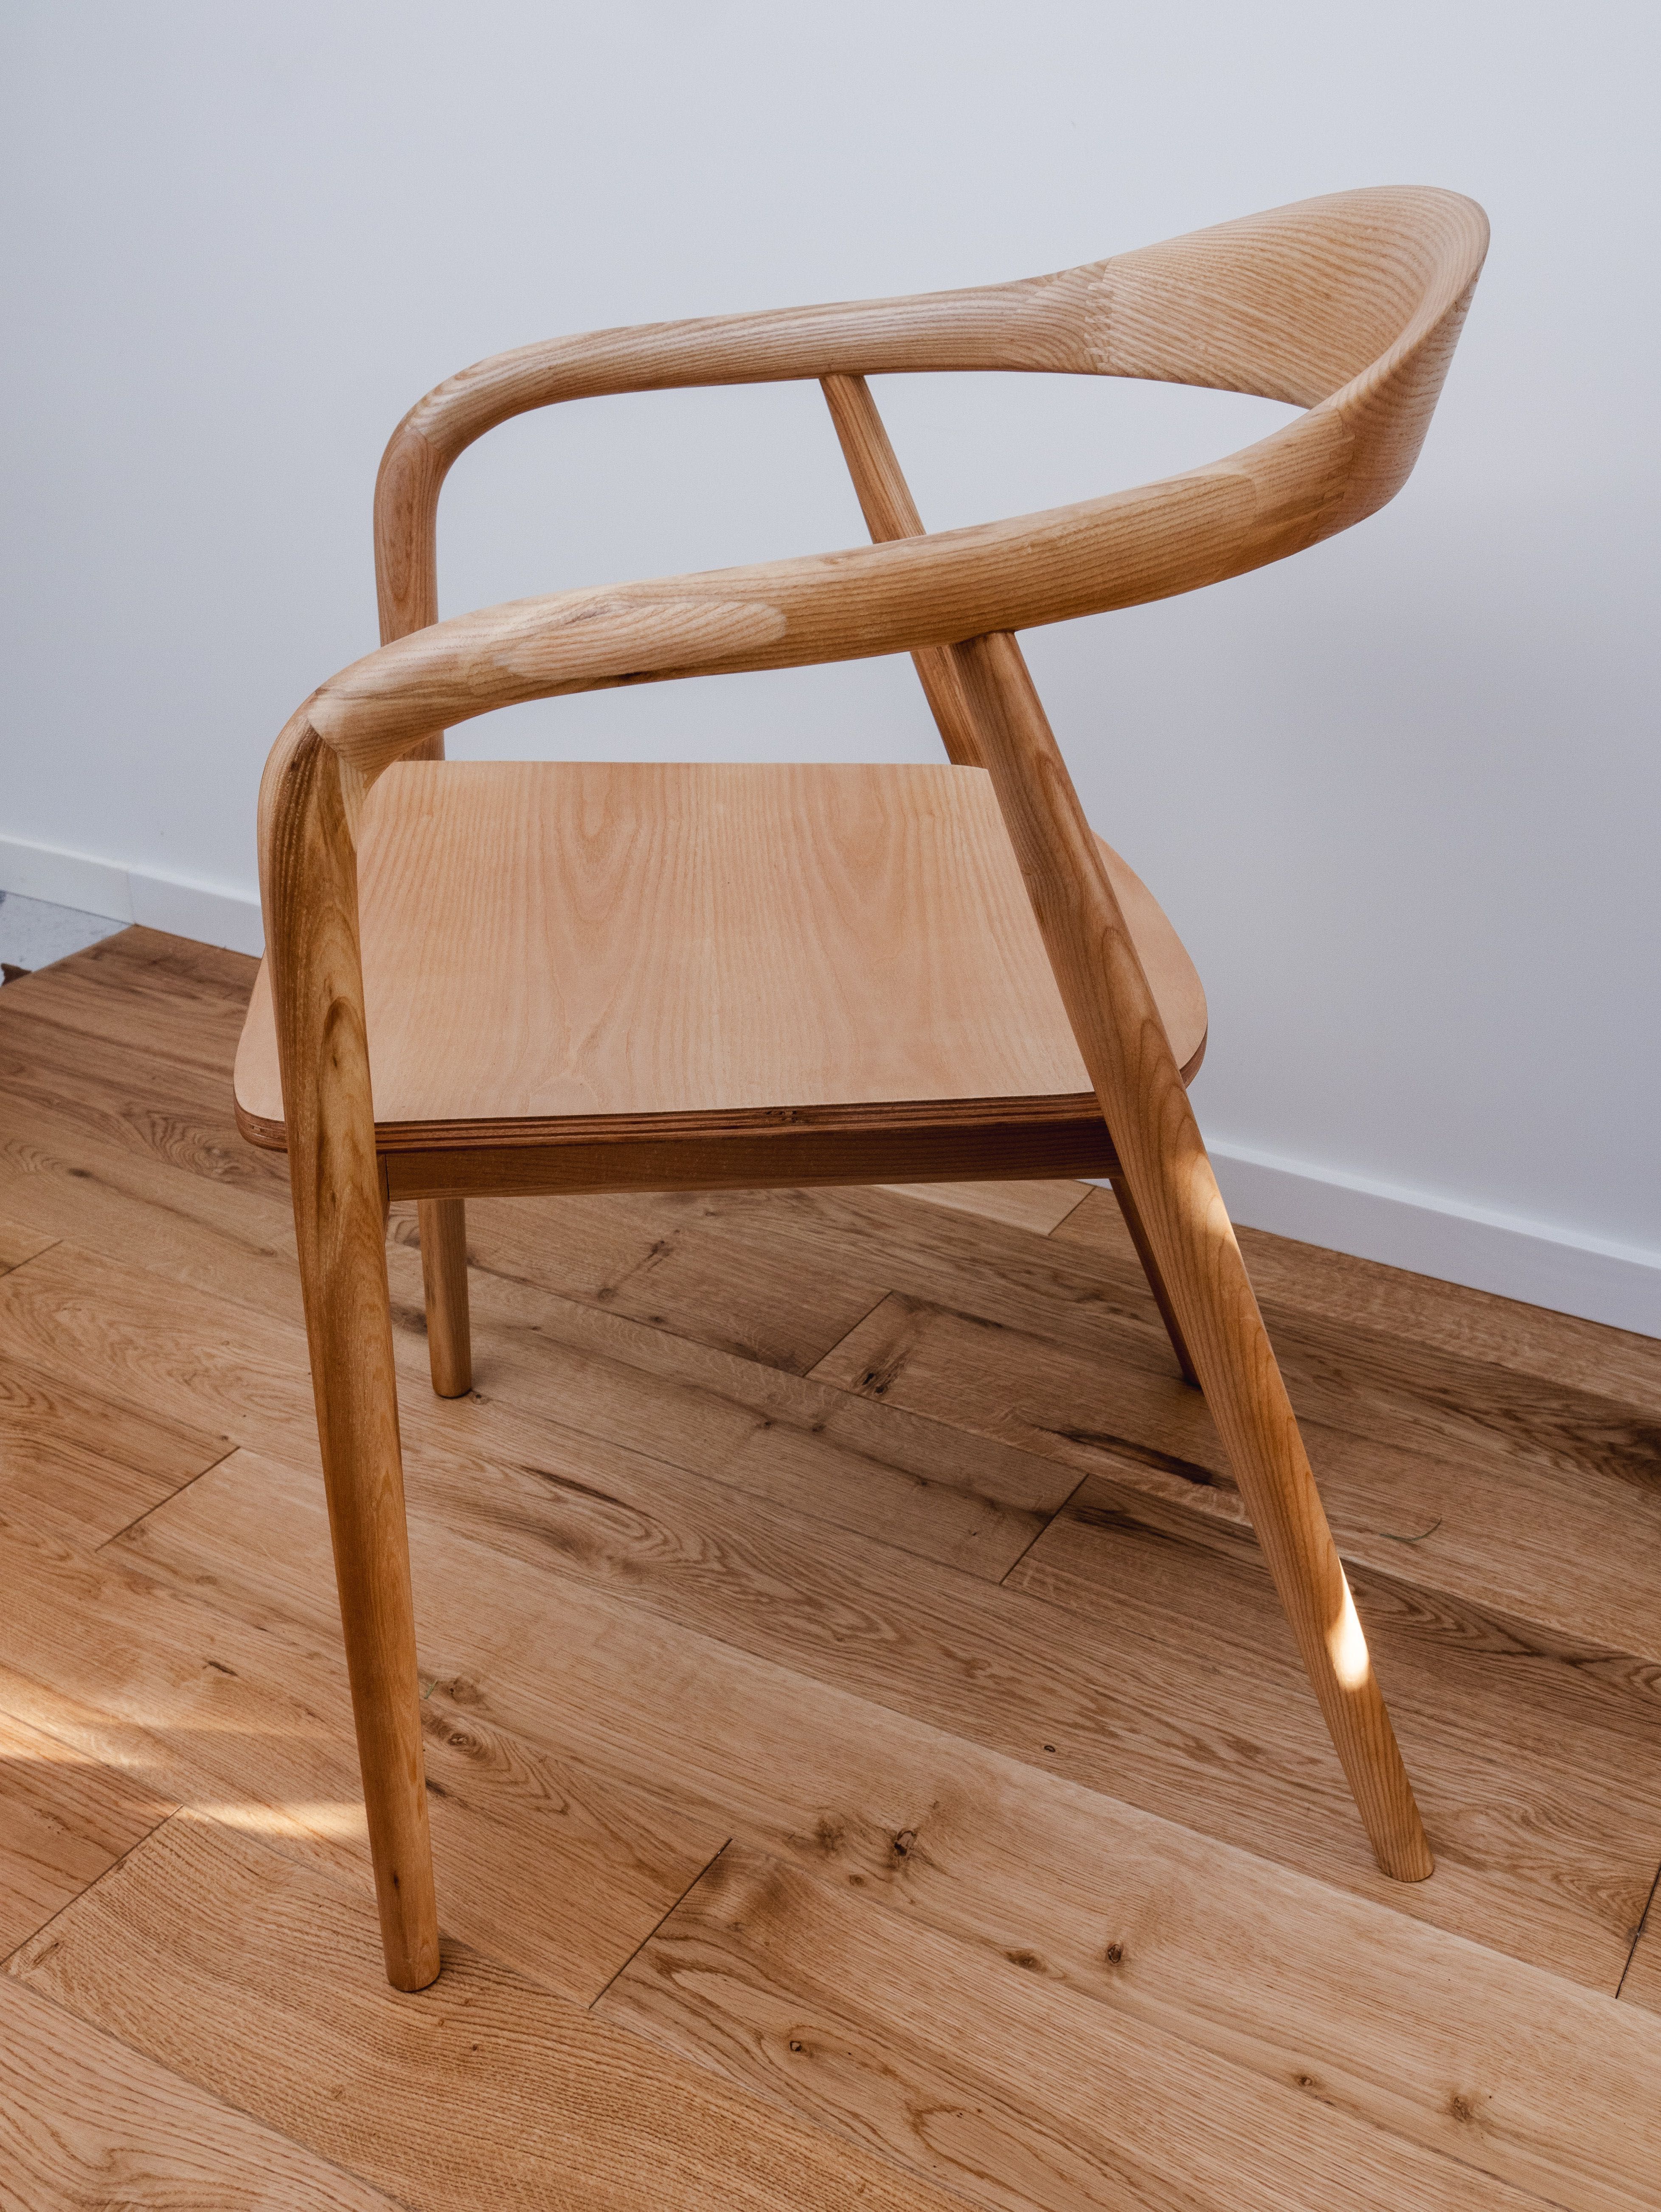 Krzesło z podłokietnikami z drewna Angelina